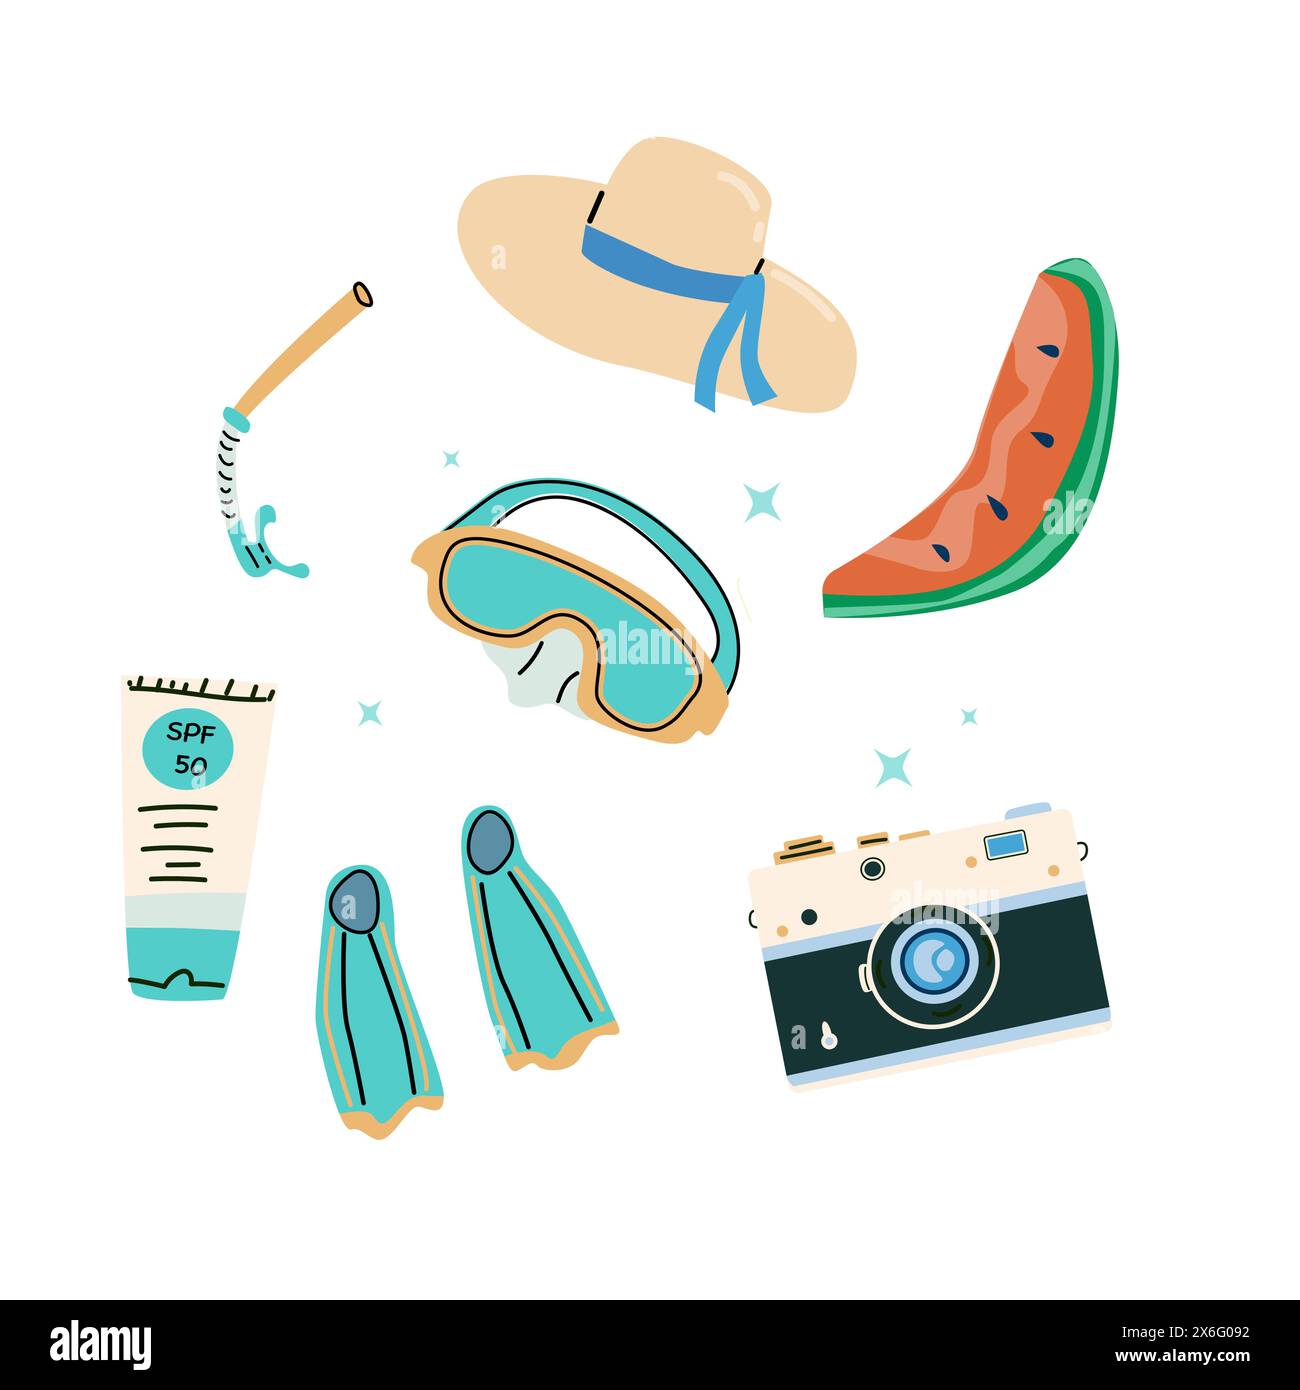 Elementi di viaggio per le vacanze estive su sfondo blu. Design resort sulla spiaggia. Fotocamera e accessori di protezione. Illustrazione Vettoriale